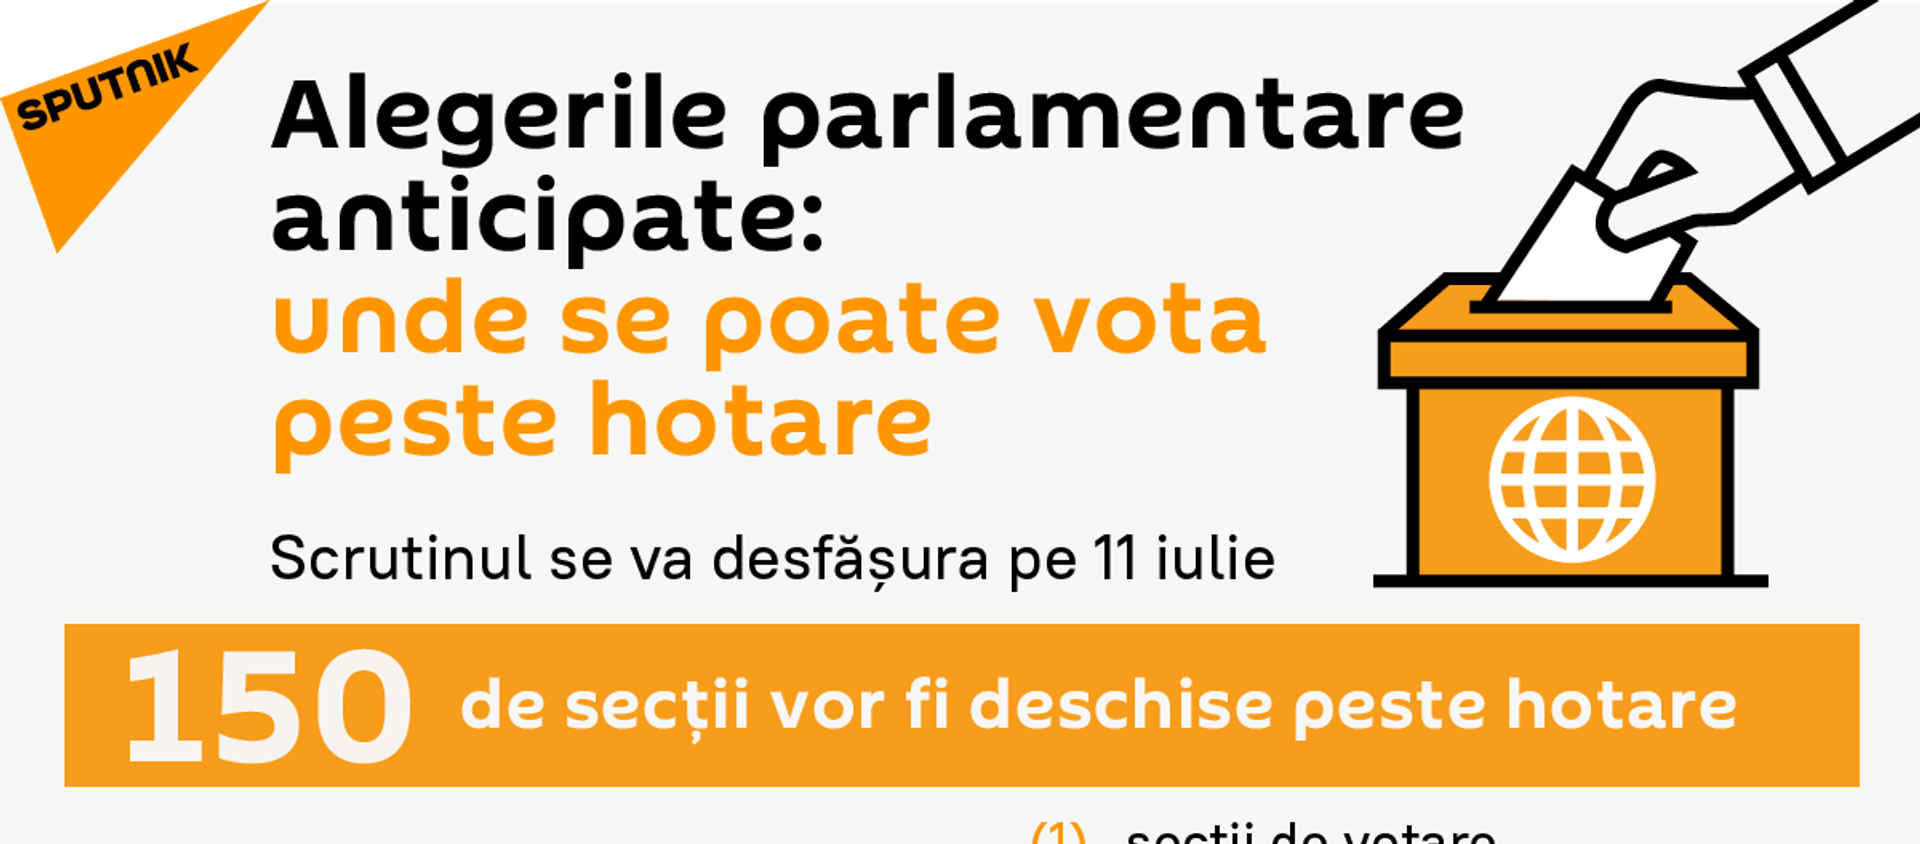 Alegerile parlamentare anticipate:  unde se poate vota peste hotare		 - Sputnik Moldova, 1920, 07.07.2021